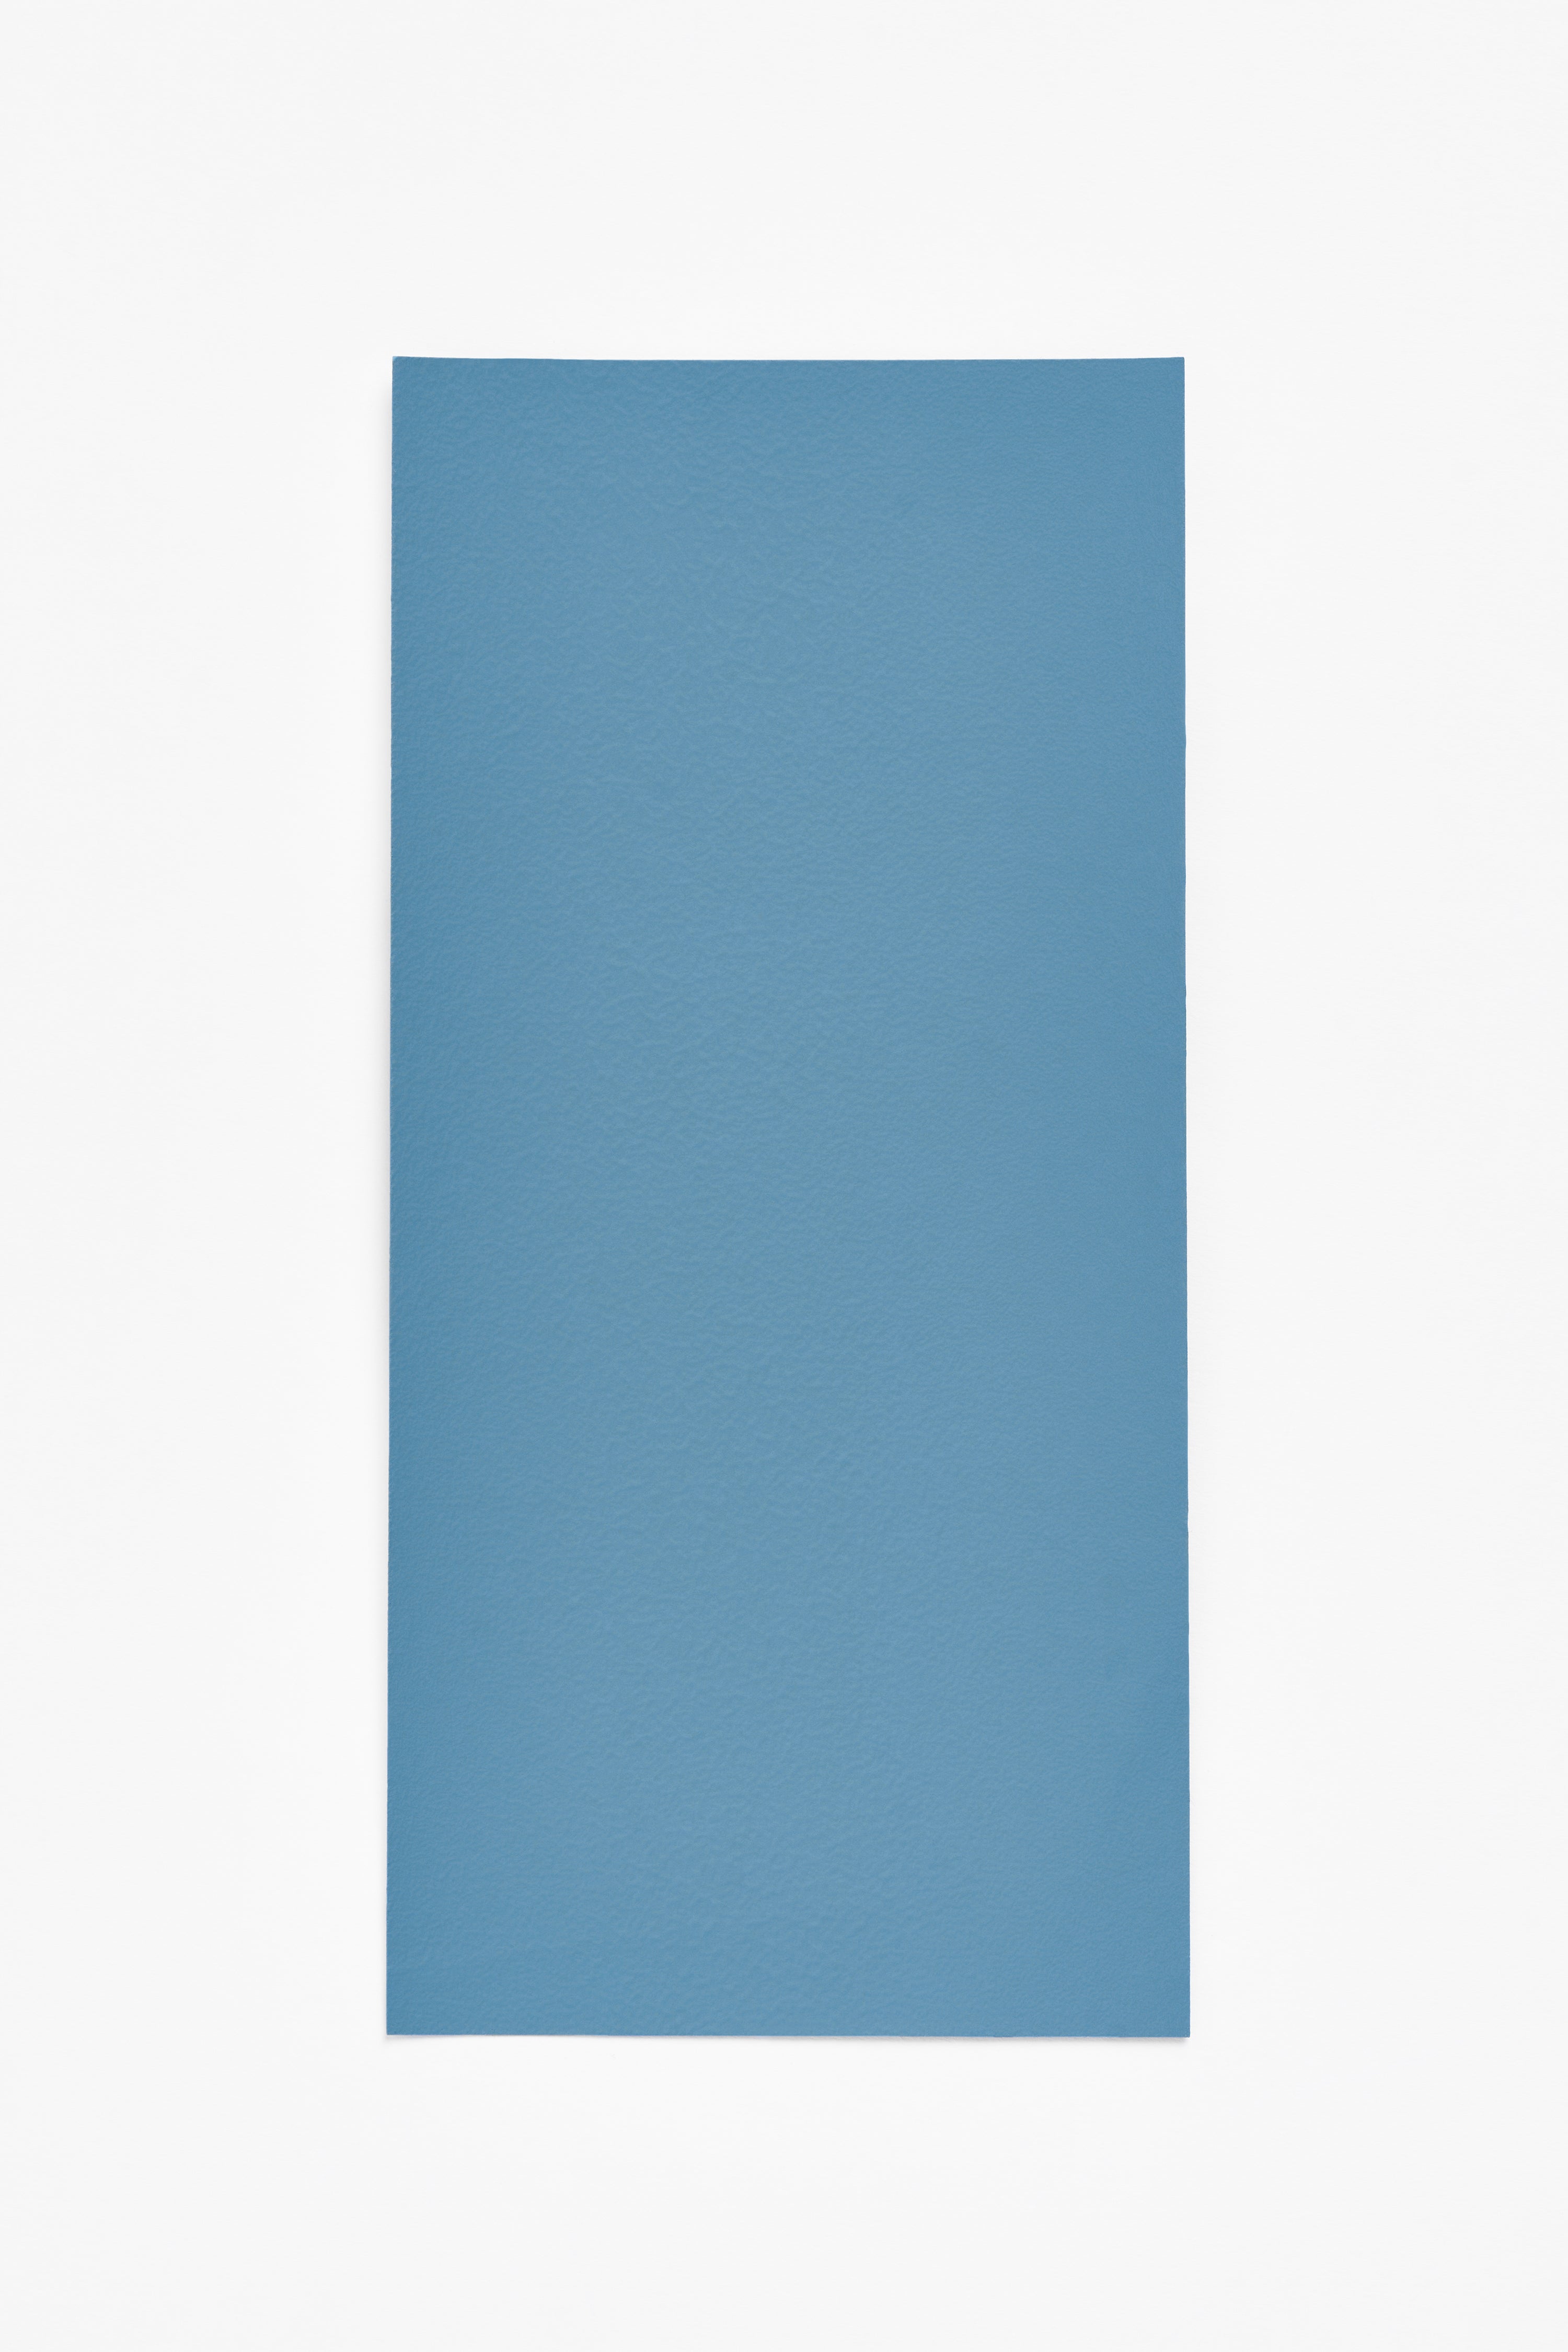 Blue — a paint colour developed by Muller Van Severen for Blēo